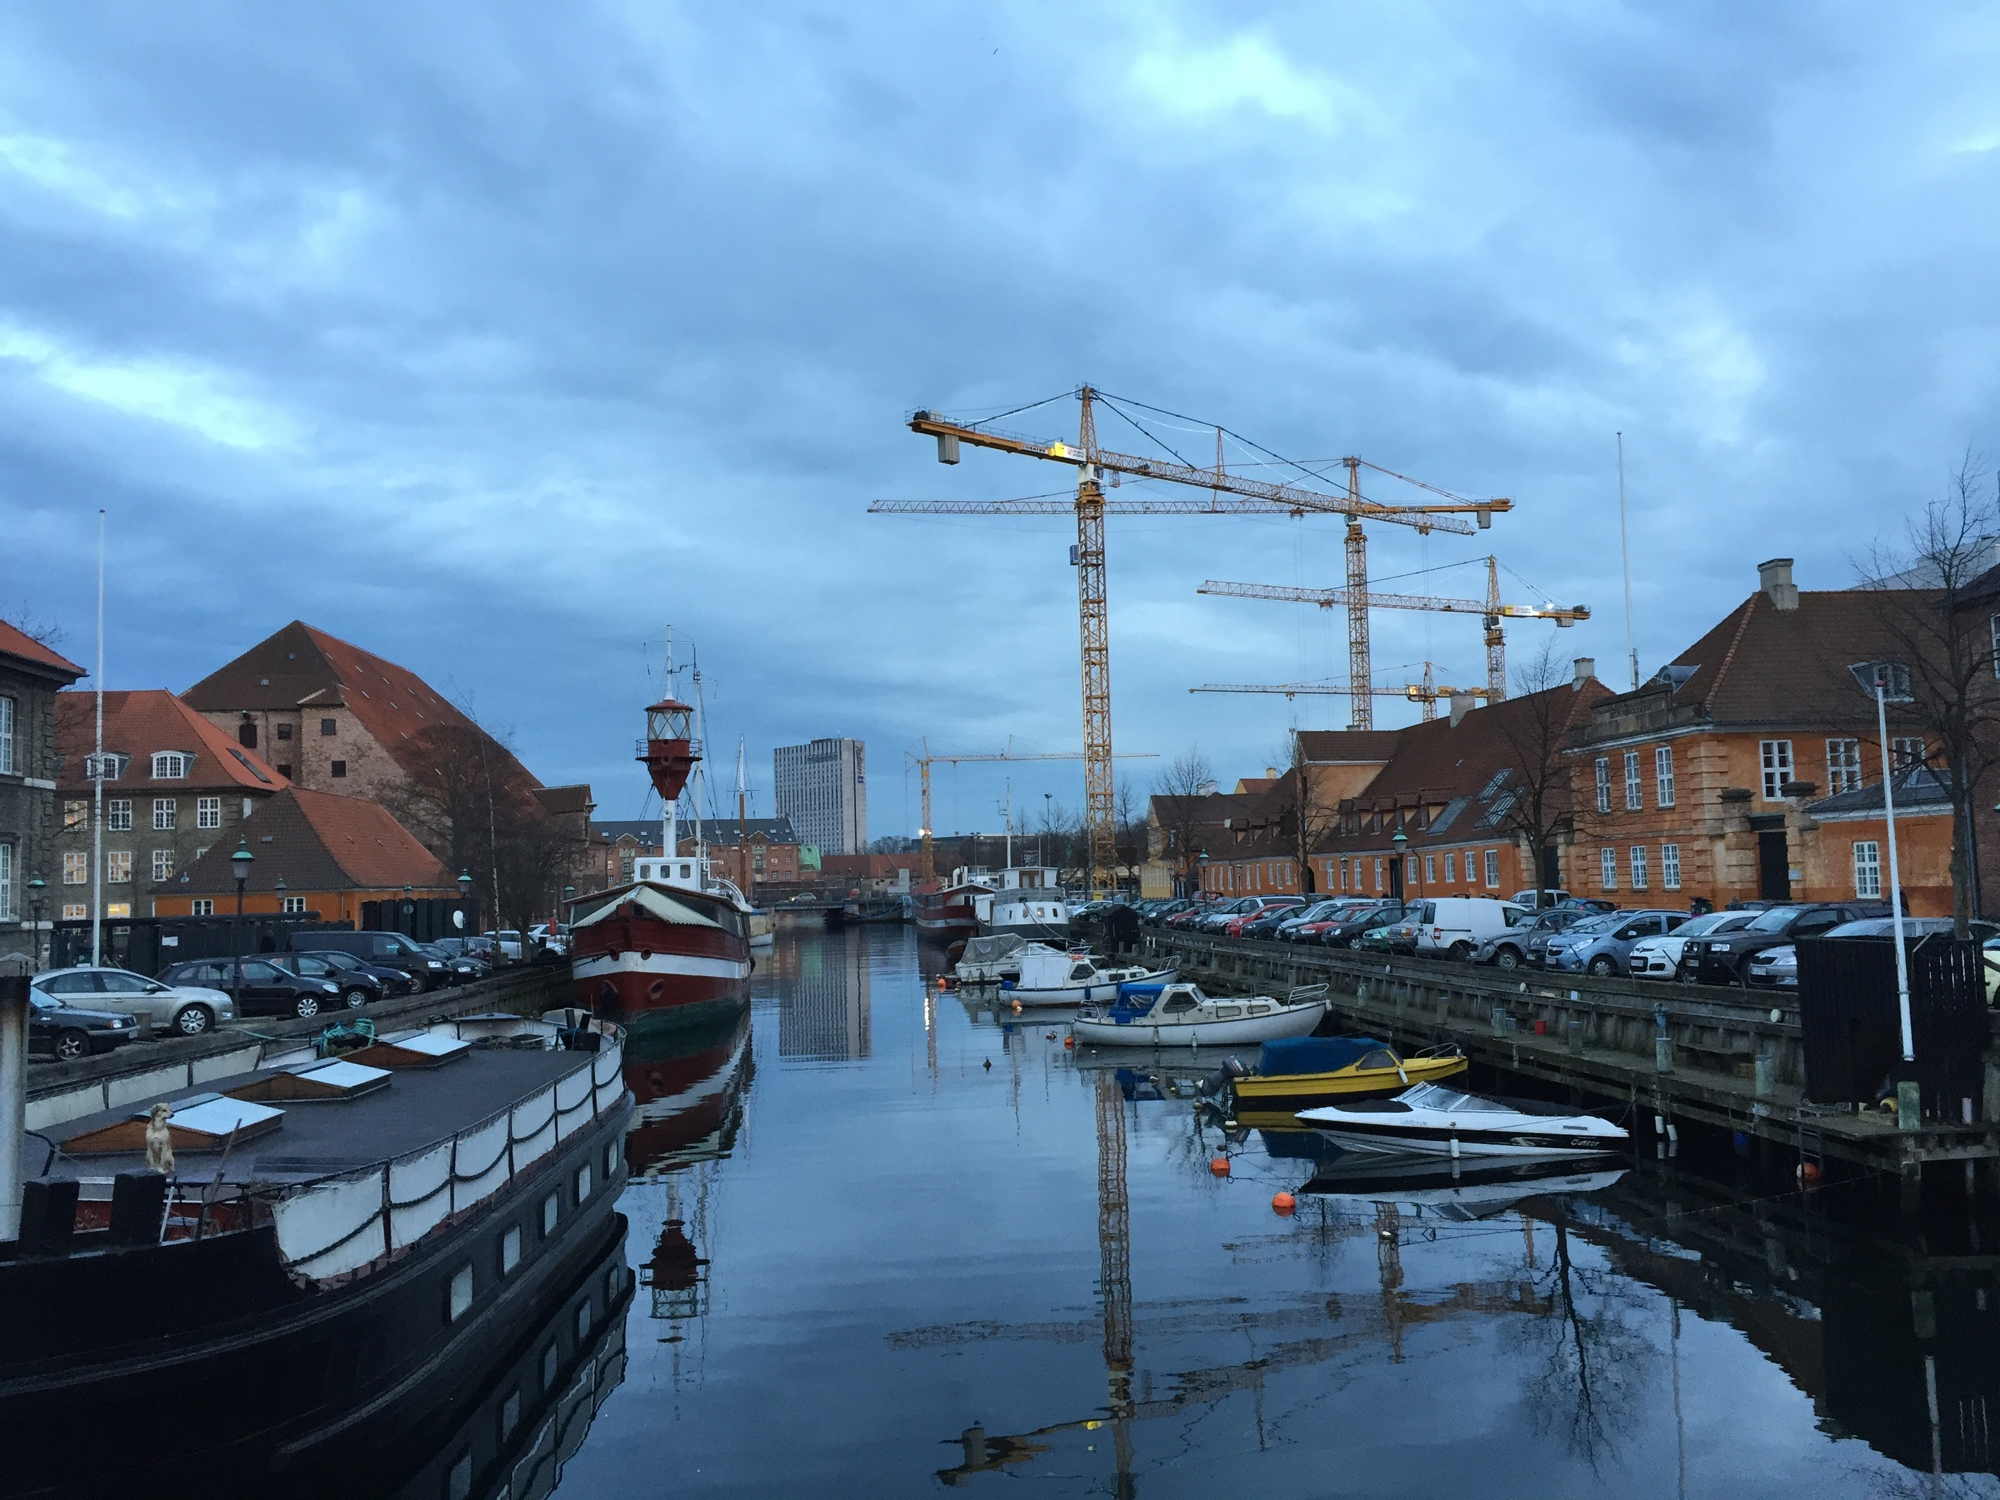 Brücke nach Slotsholmen, typisches Kopenhagen-Motiv: Wasser, Schiffe, Kräne (man beachte den Hund links unten auf dem Schiff)